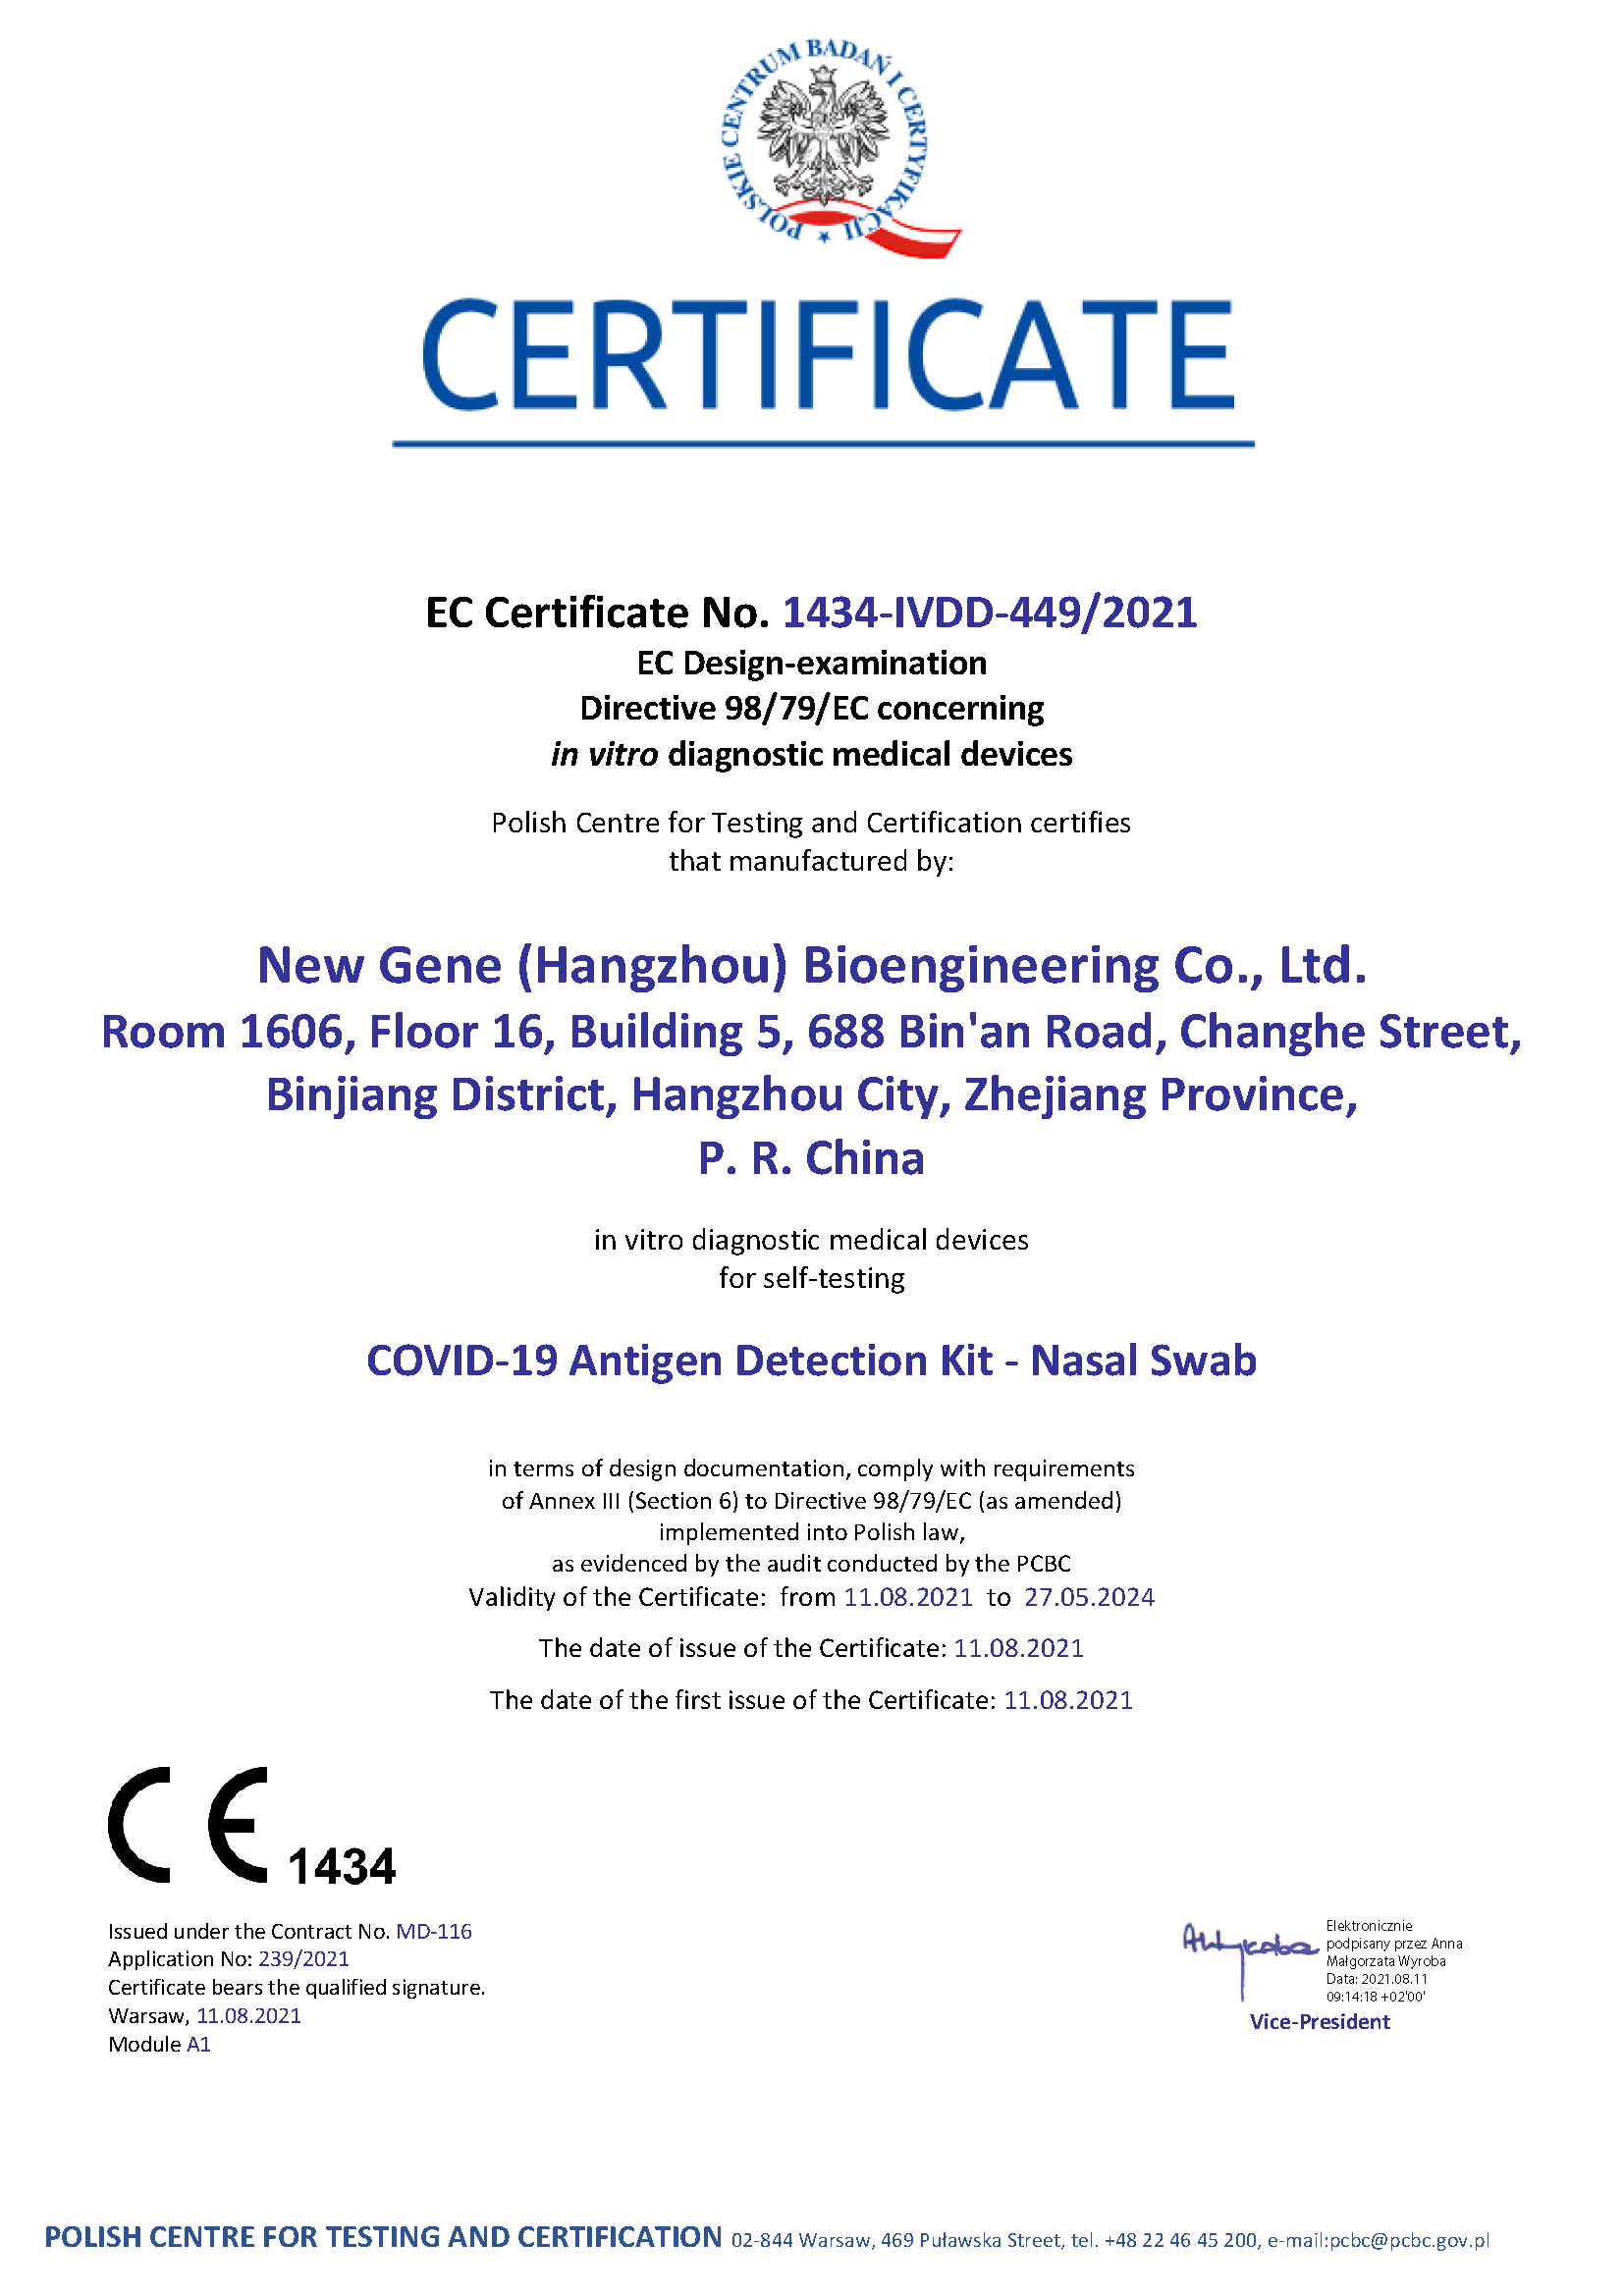 Neues Gen-COVID-19-Antigen-Nachweiskit – Selbsttestzertifikat (PCBC 1434)